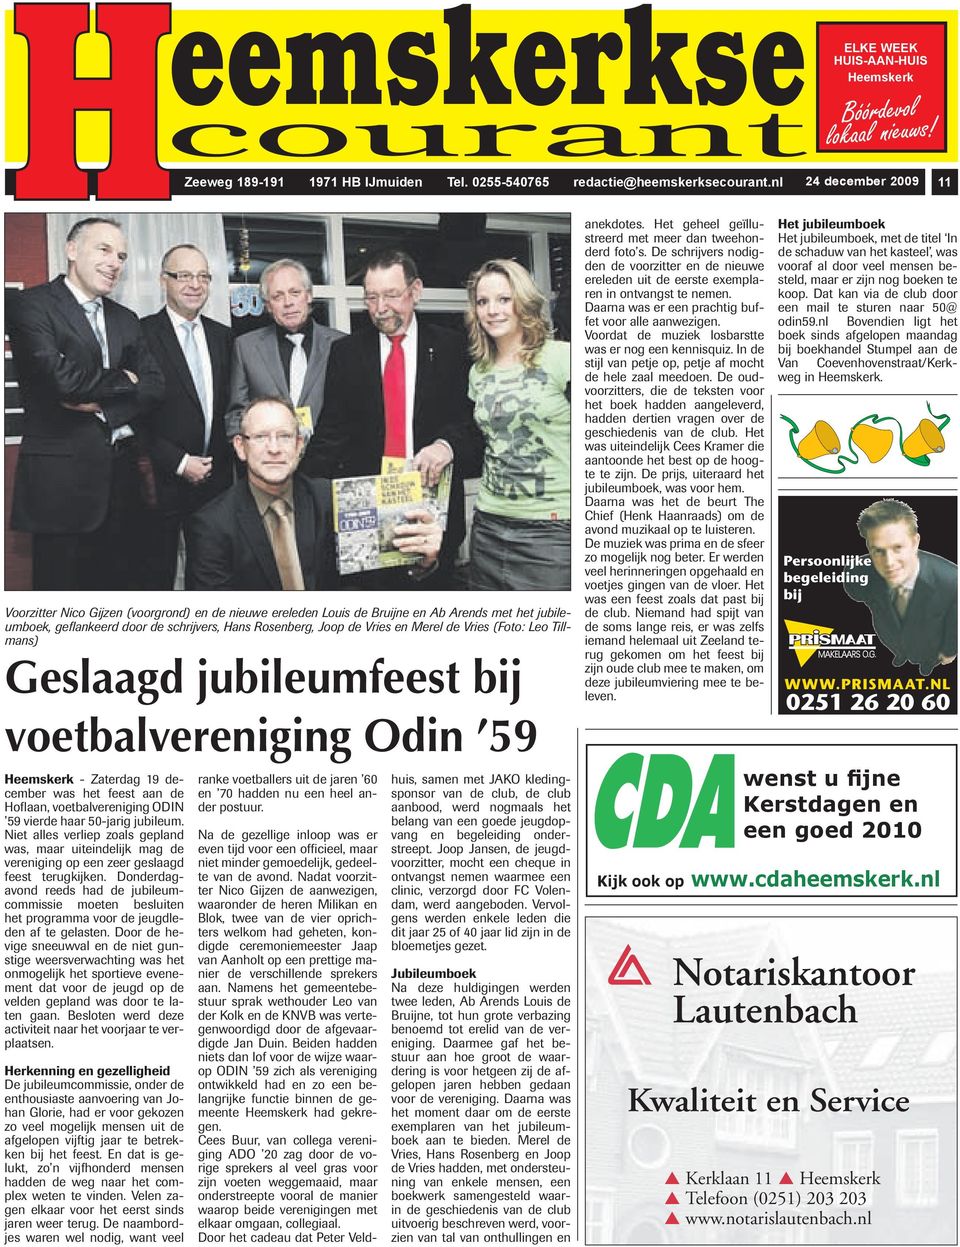 Merel de Vries (Foto: Leo Tillmans) Geslaagd jubileumfeest bij voetbalvereniging Odin 59 Heemskerk - Zaterdag 19 december was het feest aan de Hoflaan, voetbalvereniging ODIN 59 vierde haar 50-jarig